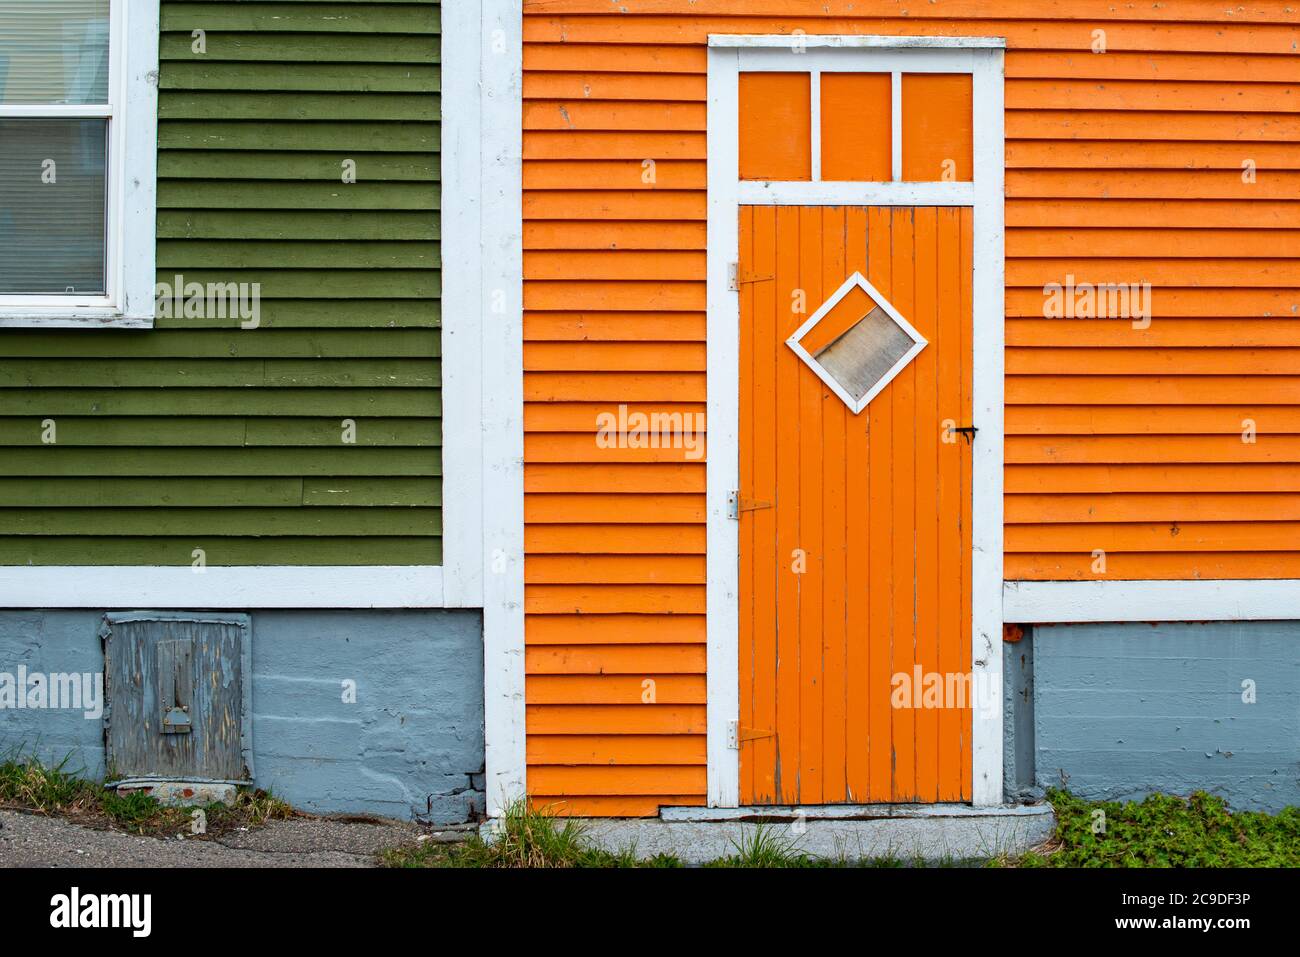 Une porte extérieure en bois orange avec une fenêtre en forme de losange dans un bâtiment à panneaux de bois orange et vert. Banque D'Images